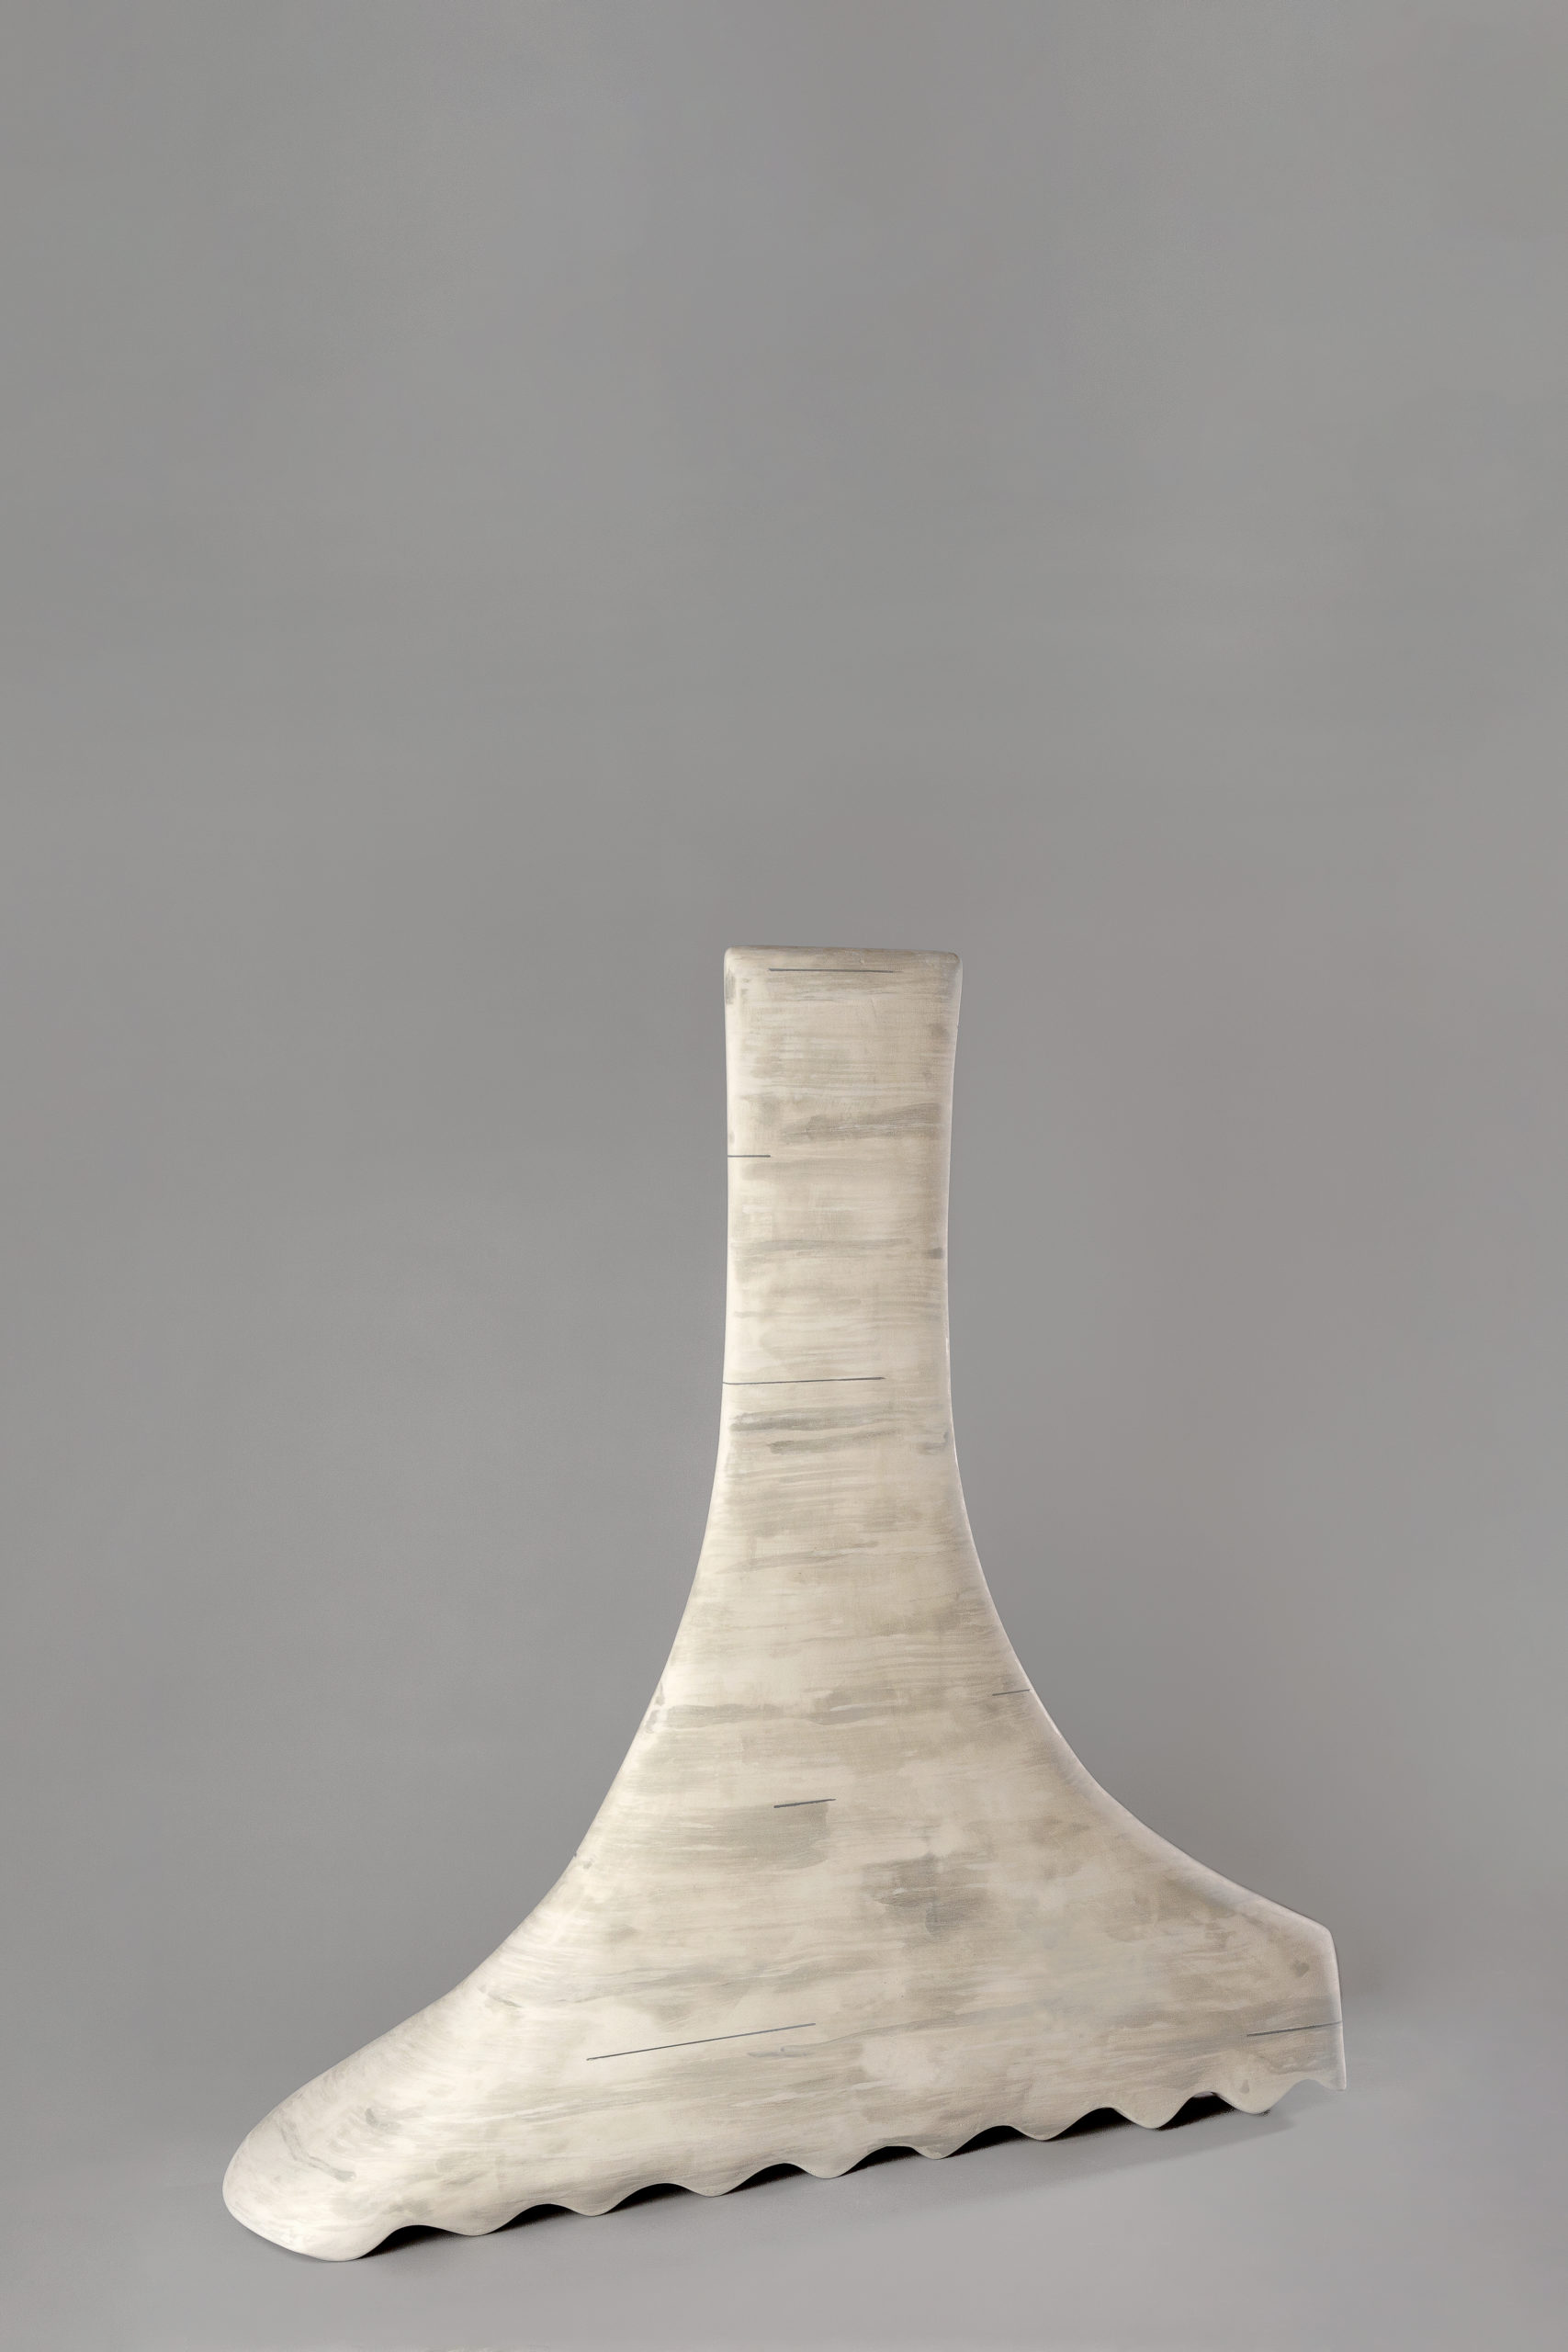 
		                					James Marshall 		                																	
																											<i>Untitled #601,</i>  
																																								2021, 
																																								glazed ceramic, 
																																								32 x 32 x 7 3/4 inches 
																								
		                				